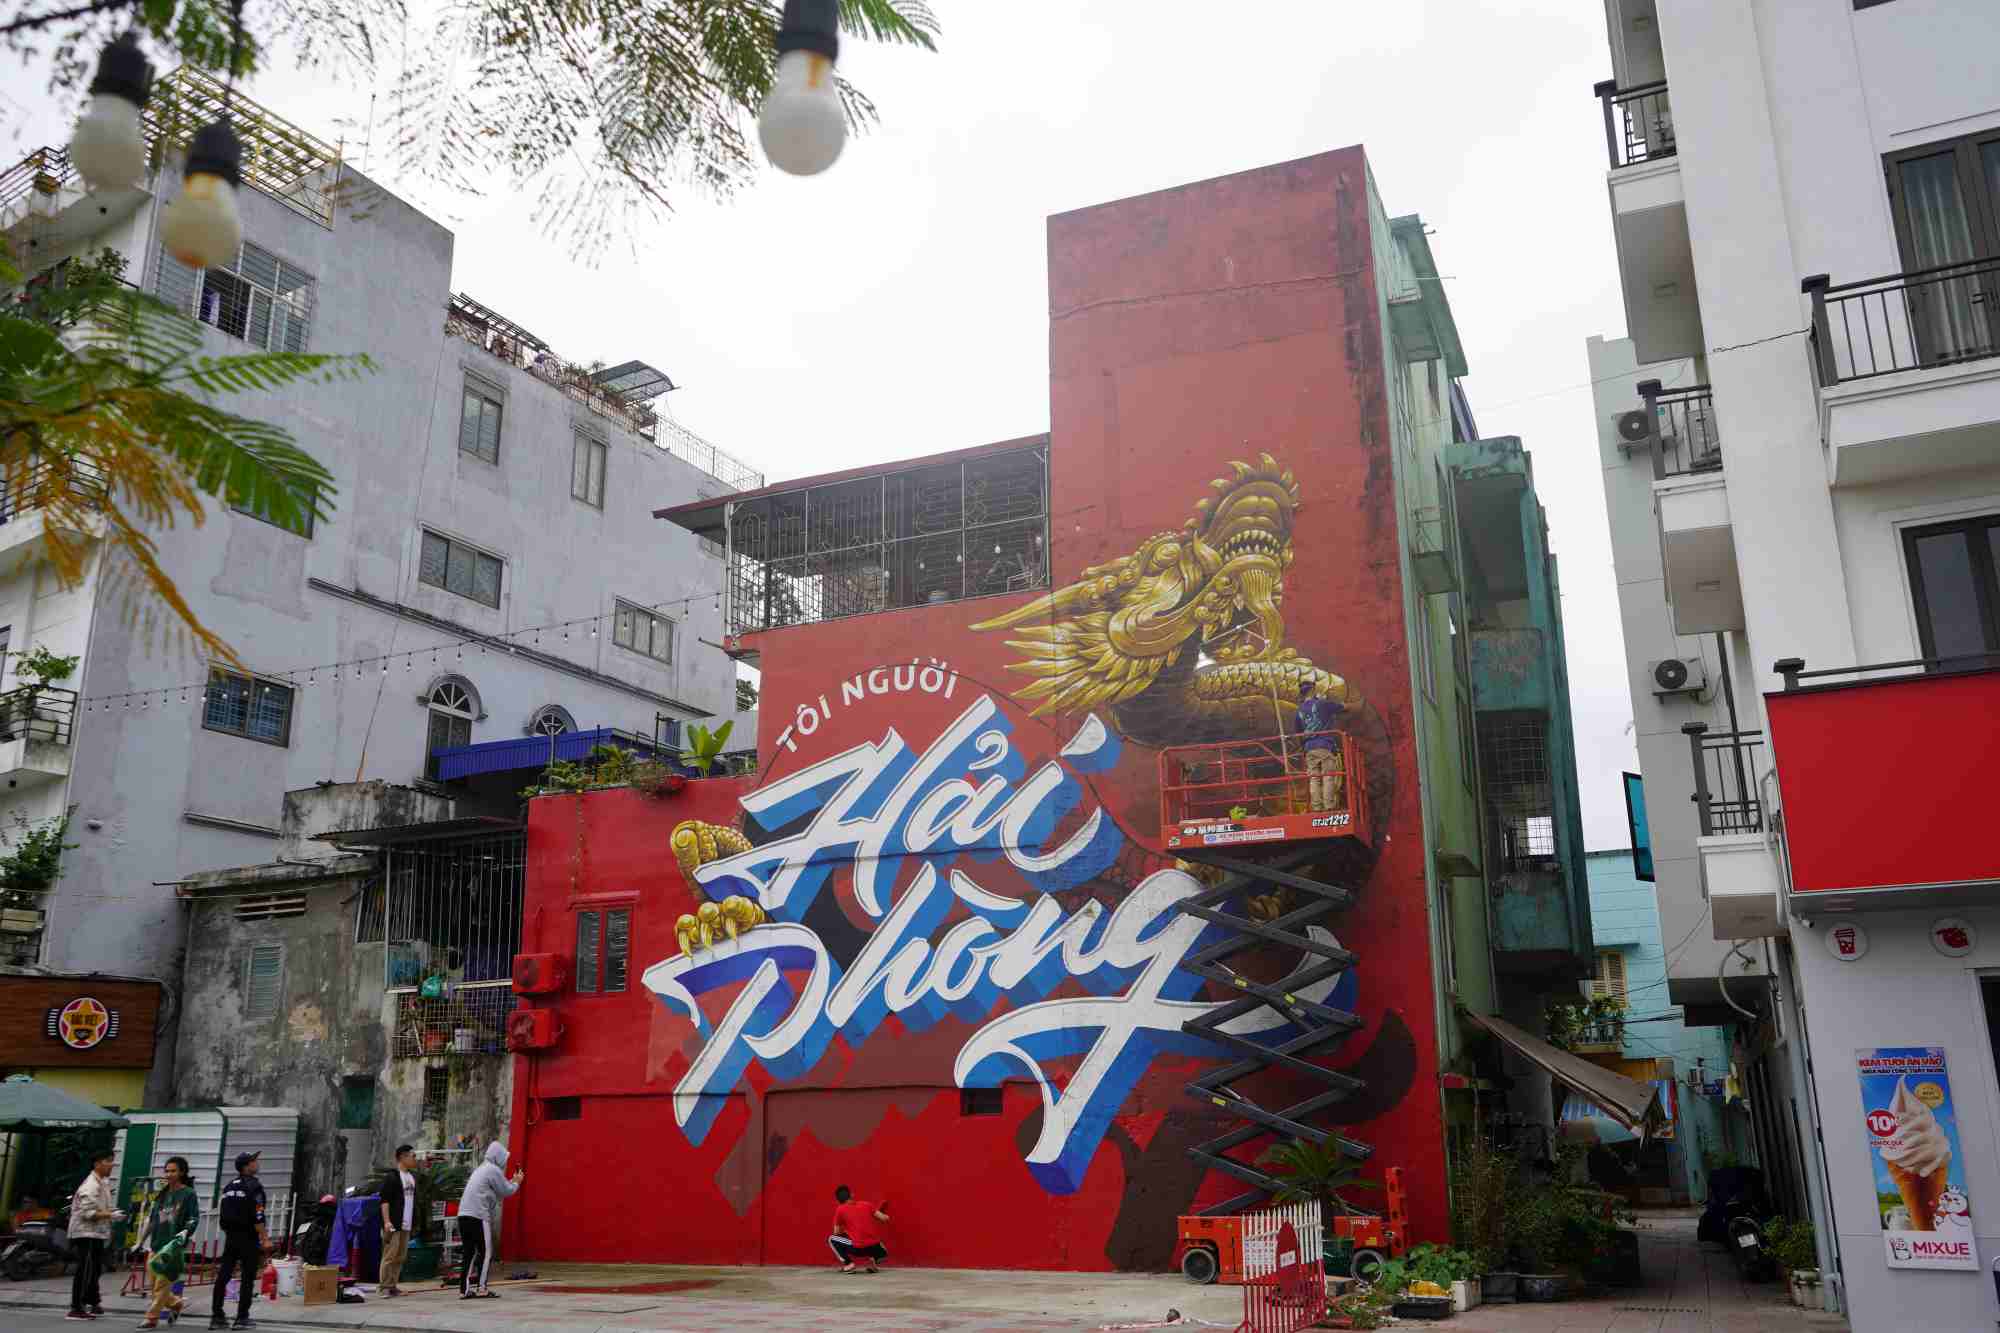 Phố đi bộ Thế Lữ (quận Hồng Bàng, Hải Phòng) nổi tiếng bức vẽ Graffiti 𝗧𝗼̂𝗶 𝗡𝗴𝘂̛𝗼̛̀𝗶 𝗛𝗮̉𝗶 𝗣𝗵𝗼̀𝗻𝗴  - một tác phẩm nghệ thuật đường phố độc đáo và ấn tượng nằm trên con đường Thế Lữ, ngay trung tâm thành phố. Bức tranh được thực hiện bởi team 𝗛𝗶𝗴𝗵𝗣𝗵𝗼𝗻𝗴 cùng một số nghệ sĩ, cũng như các bạn trẻ yêu thích nghệ thuật ở Hải Phòng với mong muốn góp phần làm đẹp cho thành phố mình